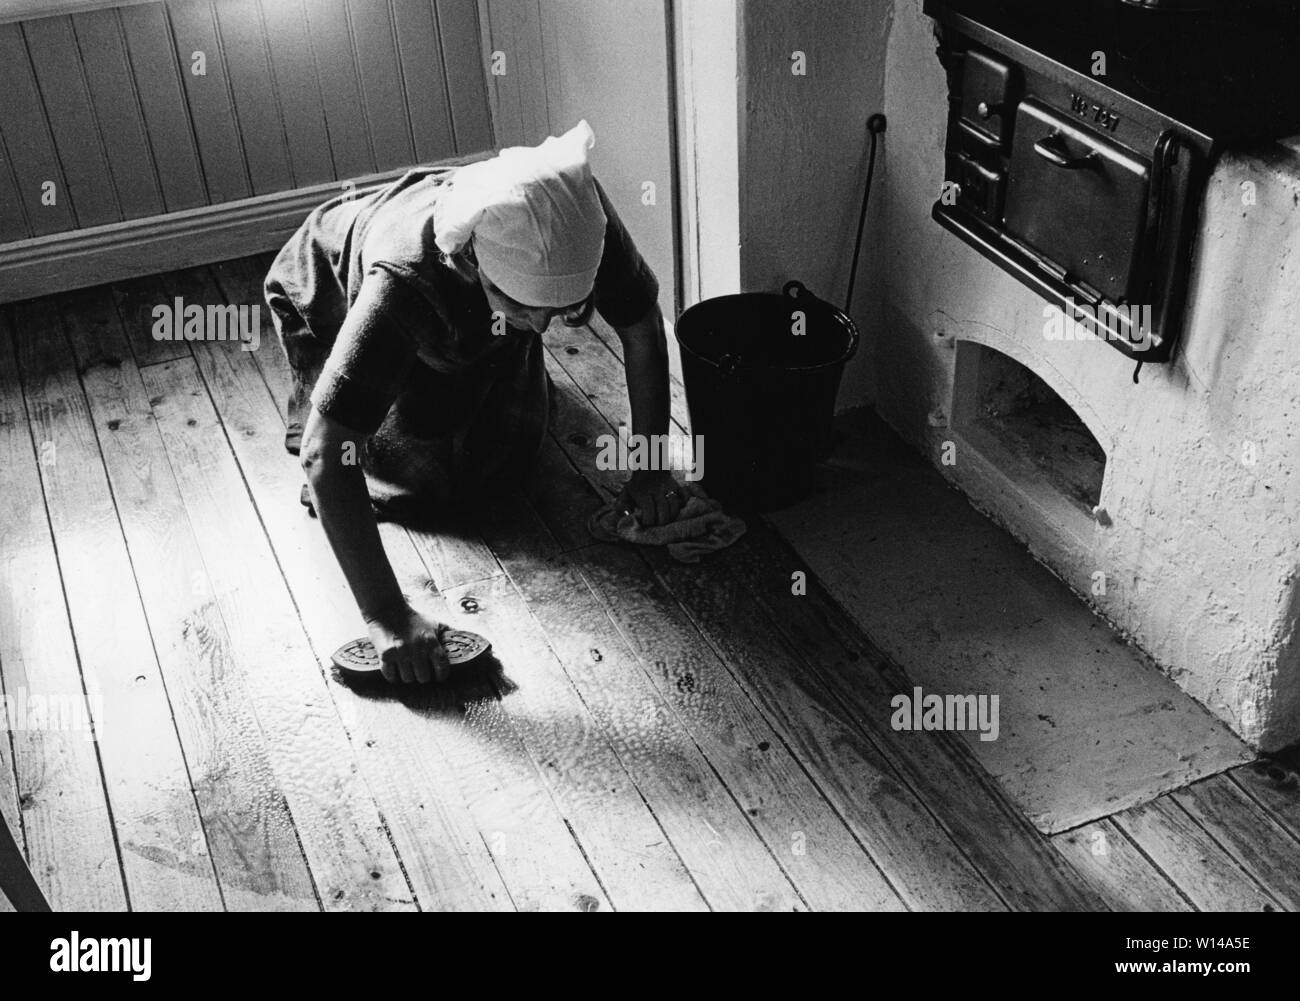 Nettoyage du marbre à l'époque. Une vieille femme est étendue sur le sol et l'utilisation d'une brosse à récurer pour nettoyer le sol de la cuisine. Une vieille cuisinière cuisine en bois est vu. Banque D'Images